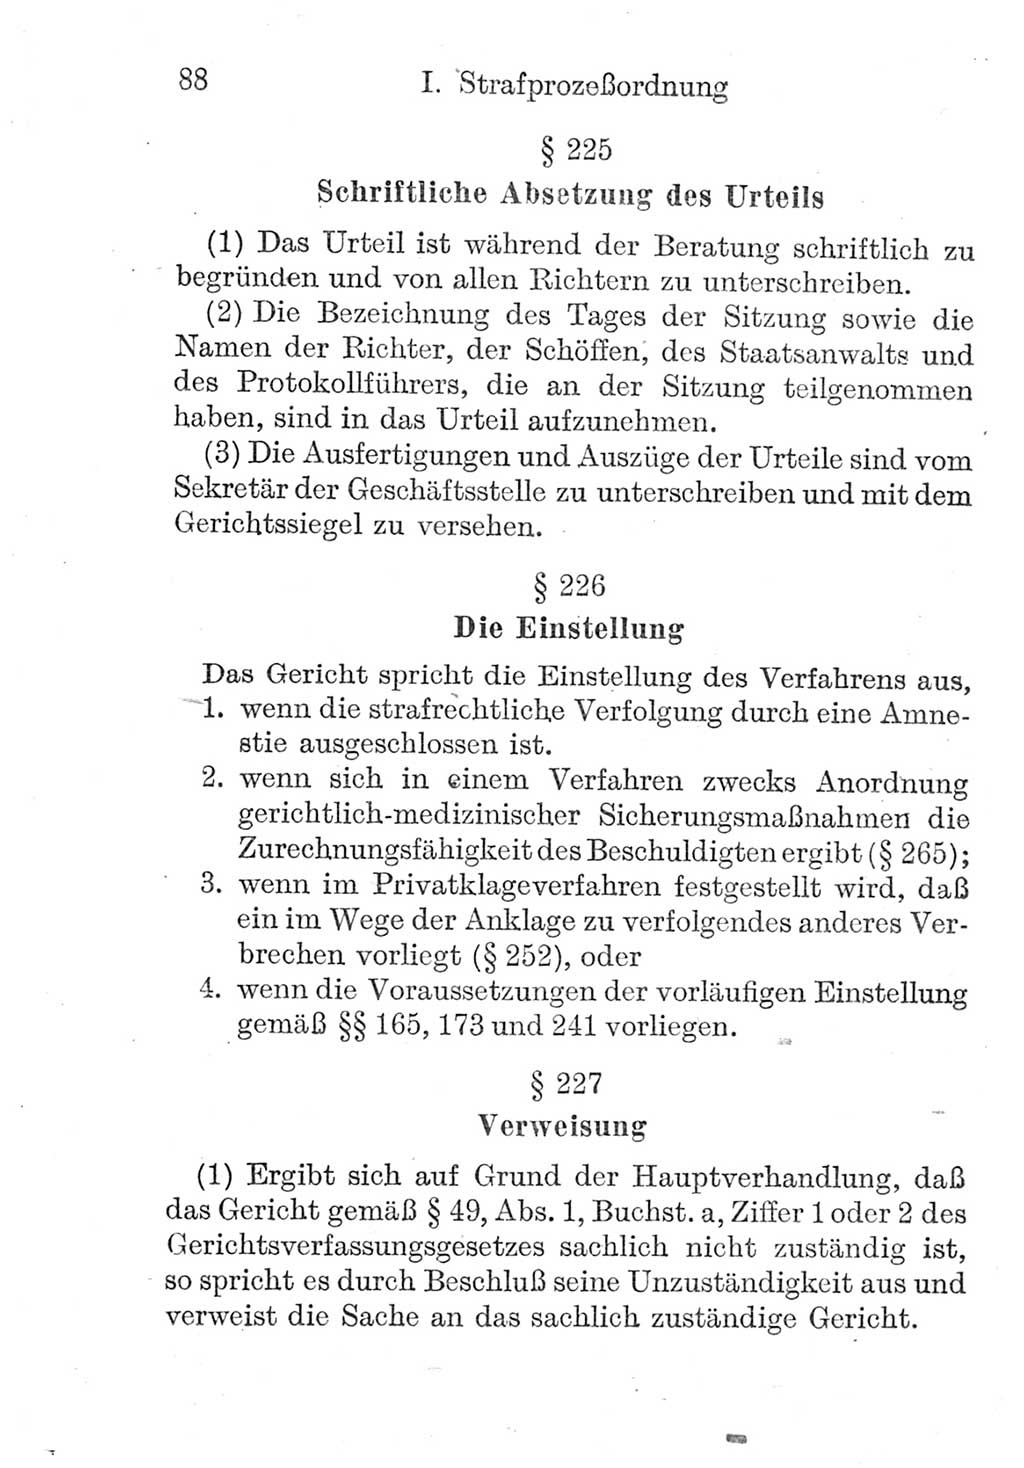 Strafprozeßordnung (StPO), Gerichtsverfassungsgesetz (GVG), Staatsanwaltsgesetz (StAG) und Jugendgerichtsgesetz (JGG) [Deutsche Demokratische Republik (DDR)] 1952, Seite 88 (StPO GVG StAG JGG DDR 1952, S. 88)